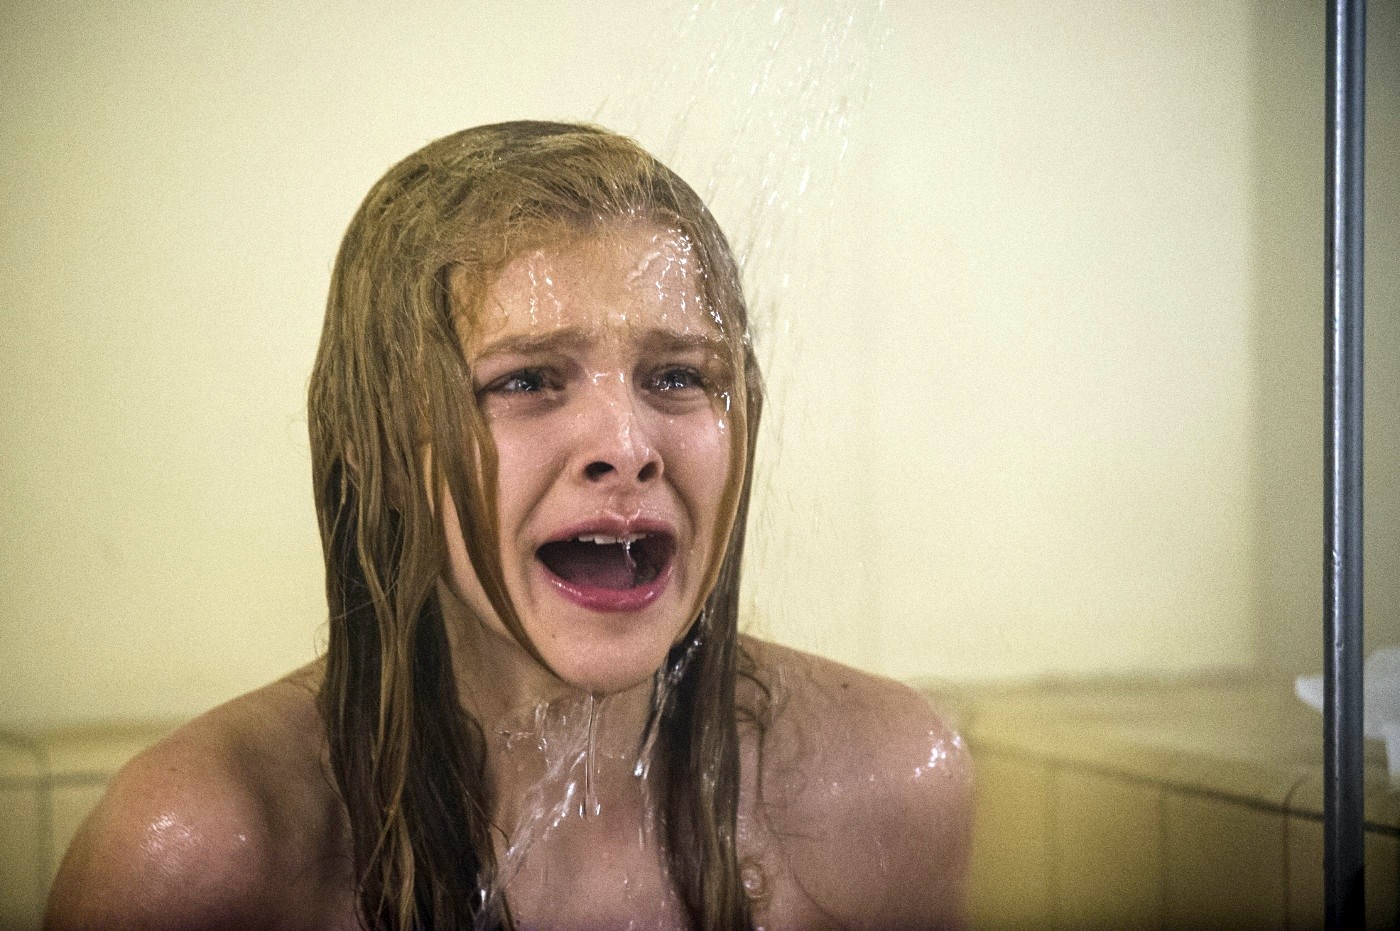 Chloe Moretz stars as Carrie White in Screen Gems' Carrie (2013)